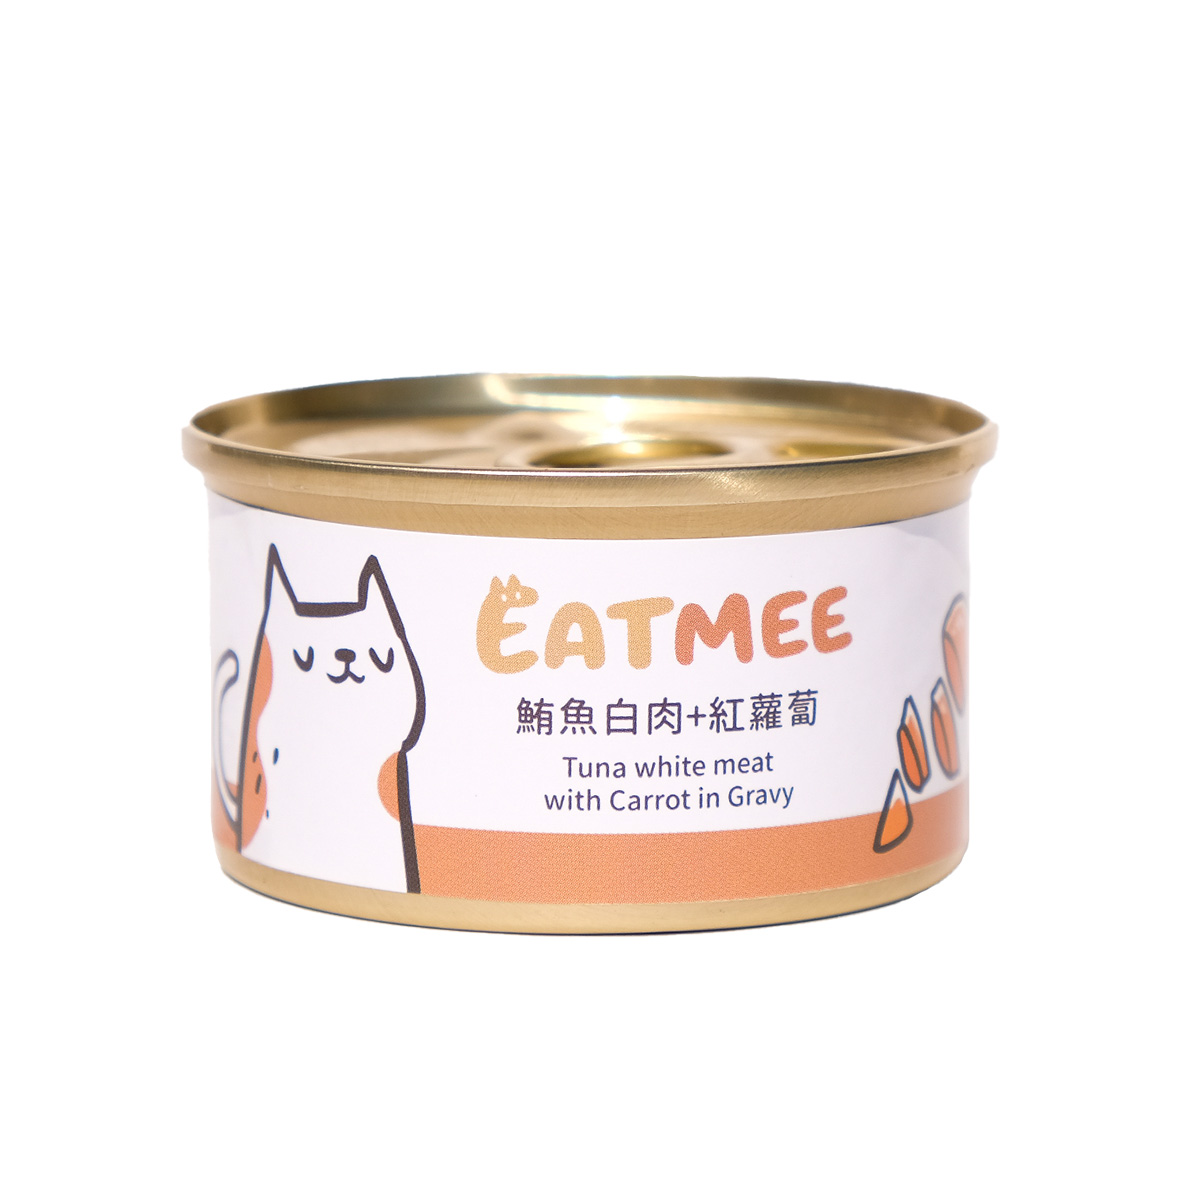 貓副食罐